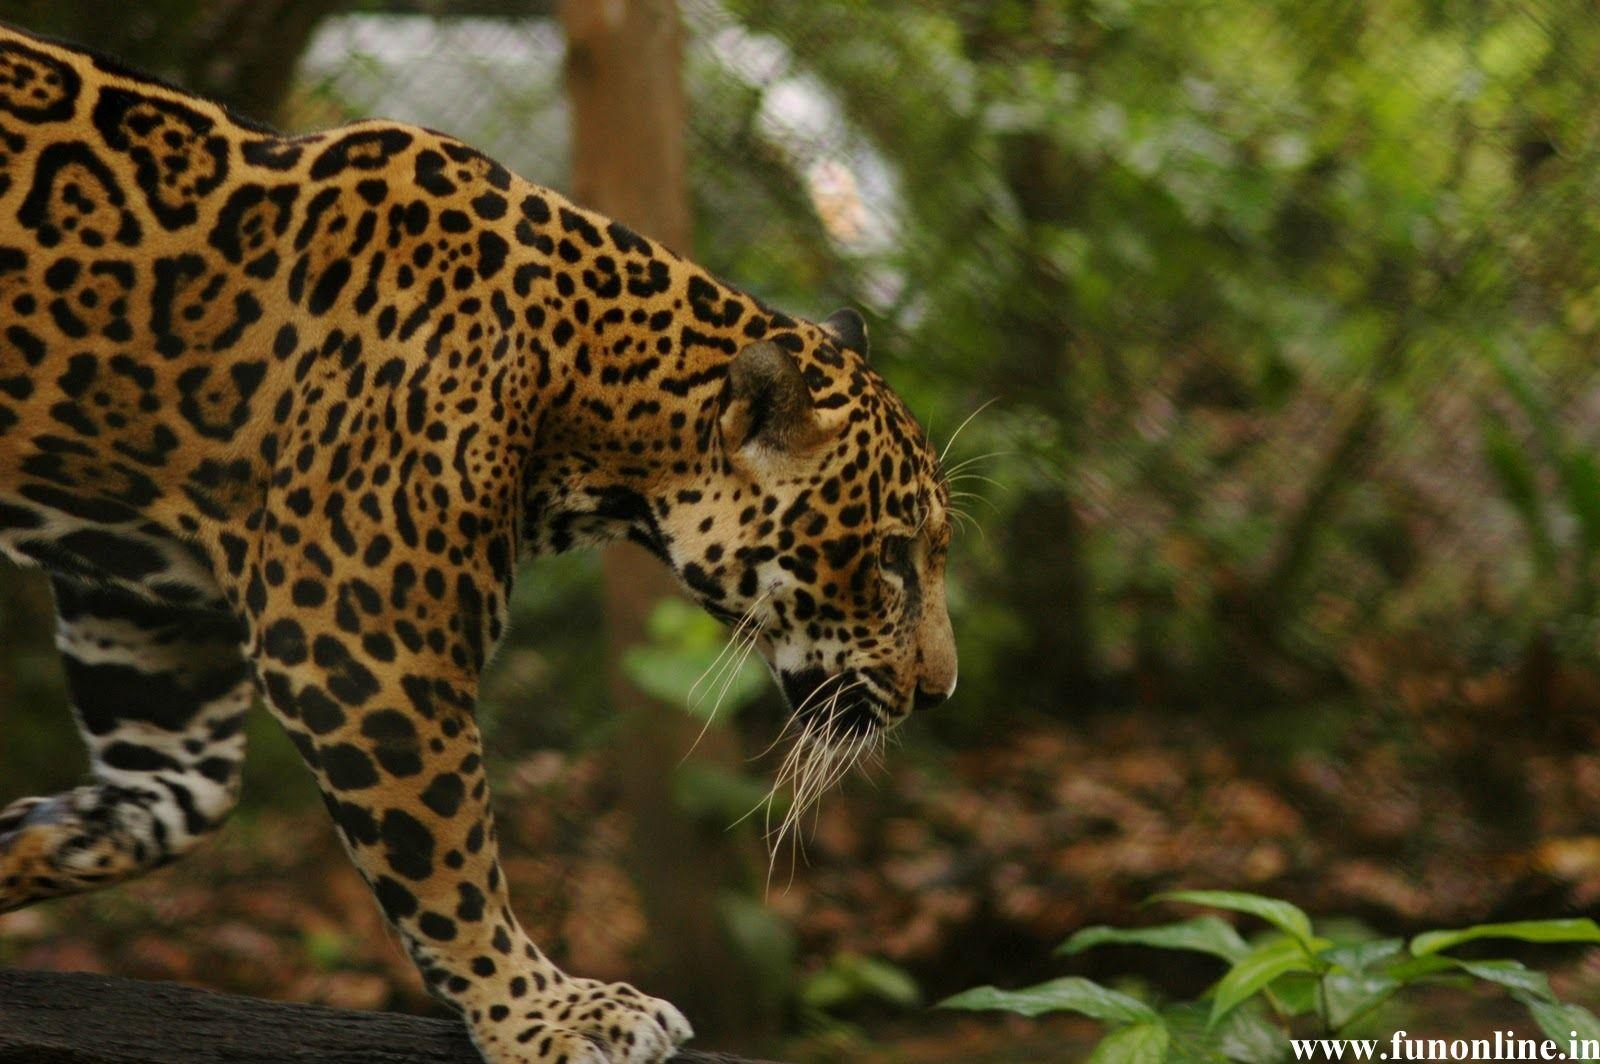 Jaguars Wallpaper